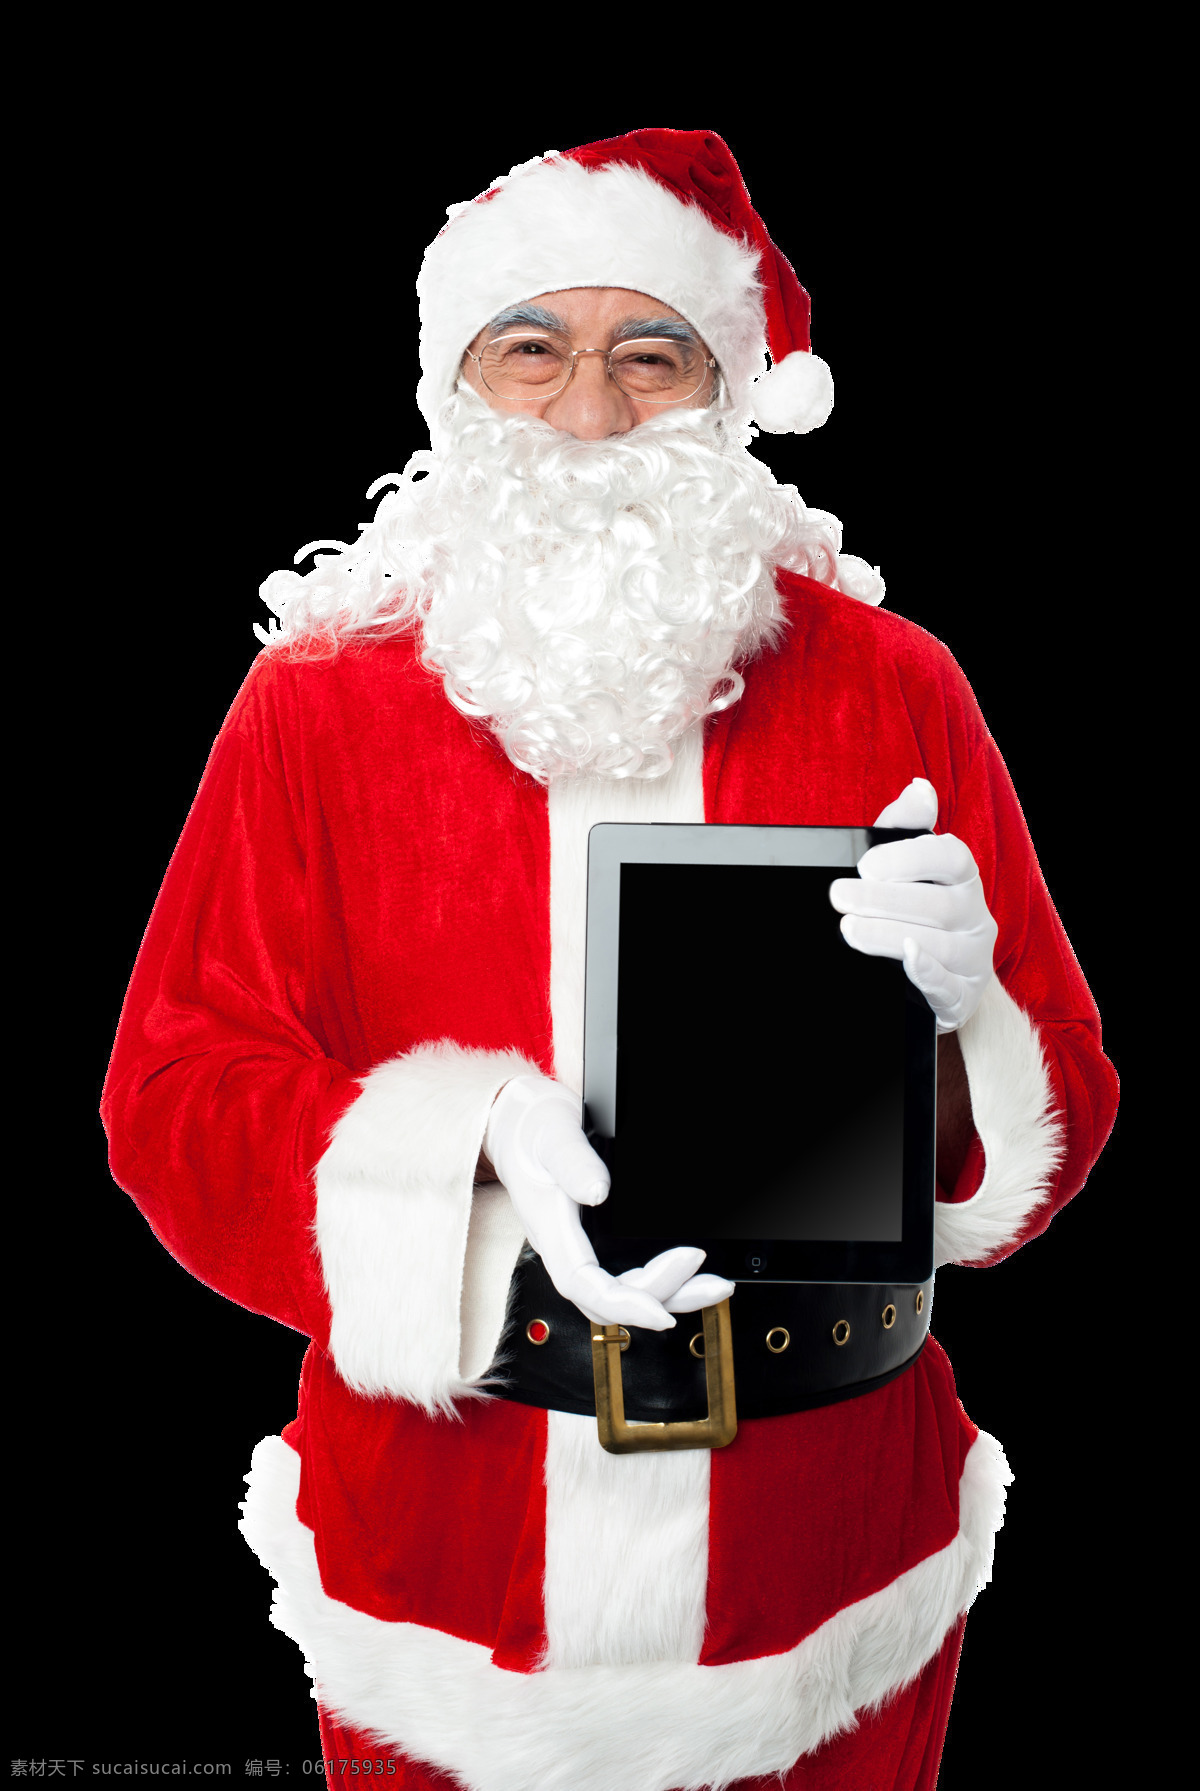 平板电脑 圣诞老人 人物 外国人物 人物摄影 生活人物 人物图片